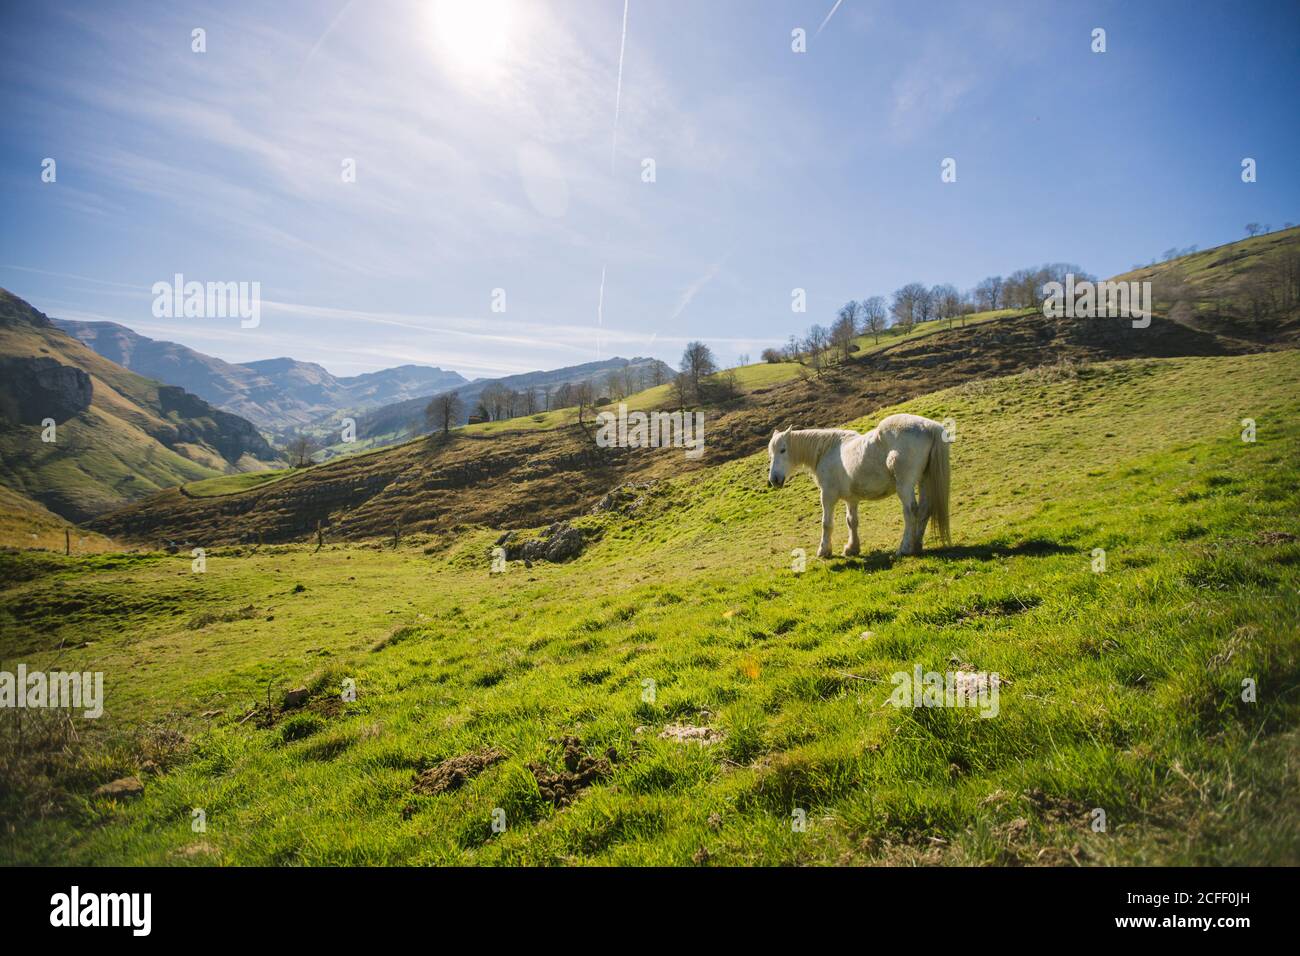 Magnifique cheval blanc paître sur la prairie luxuriante isolée sur Vallée ensoleillée dans les hauts plateaux de l'Espagne Banque D'Images